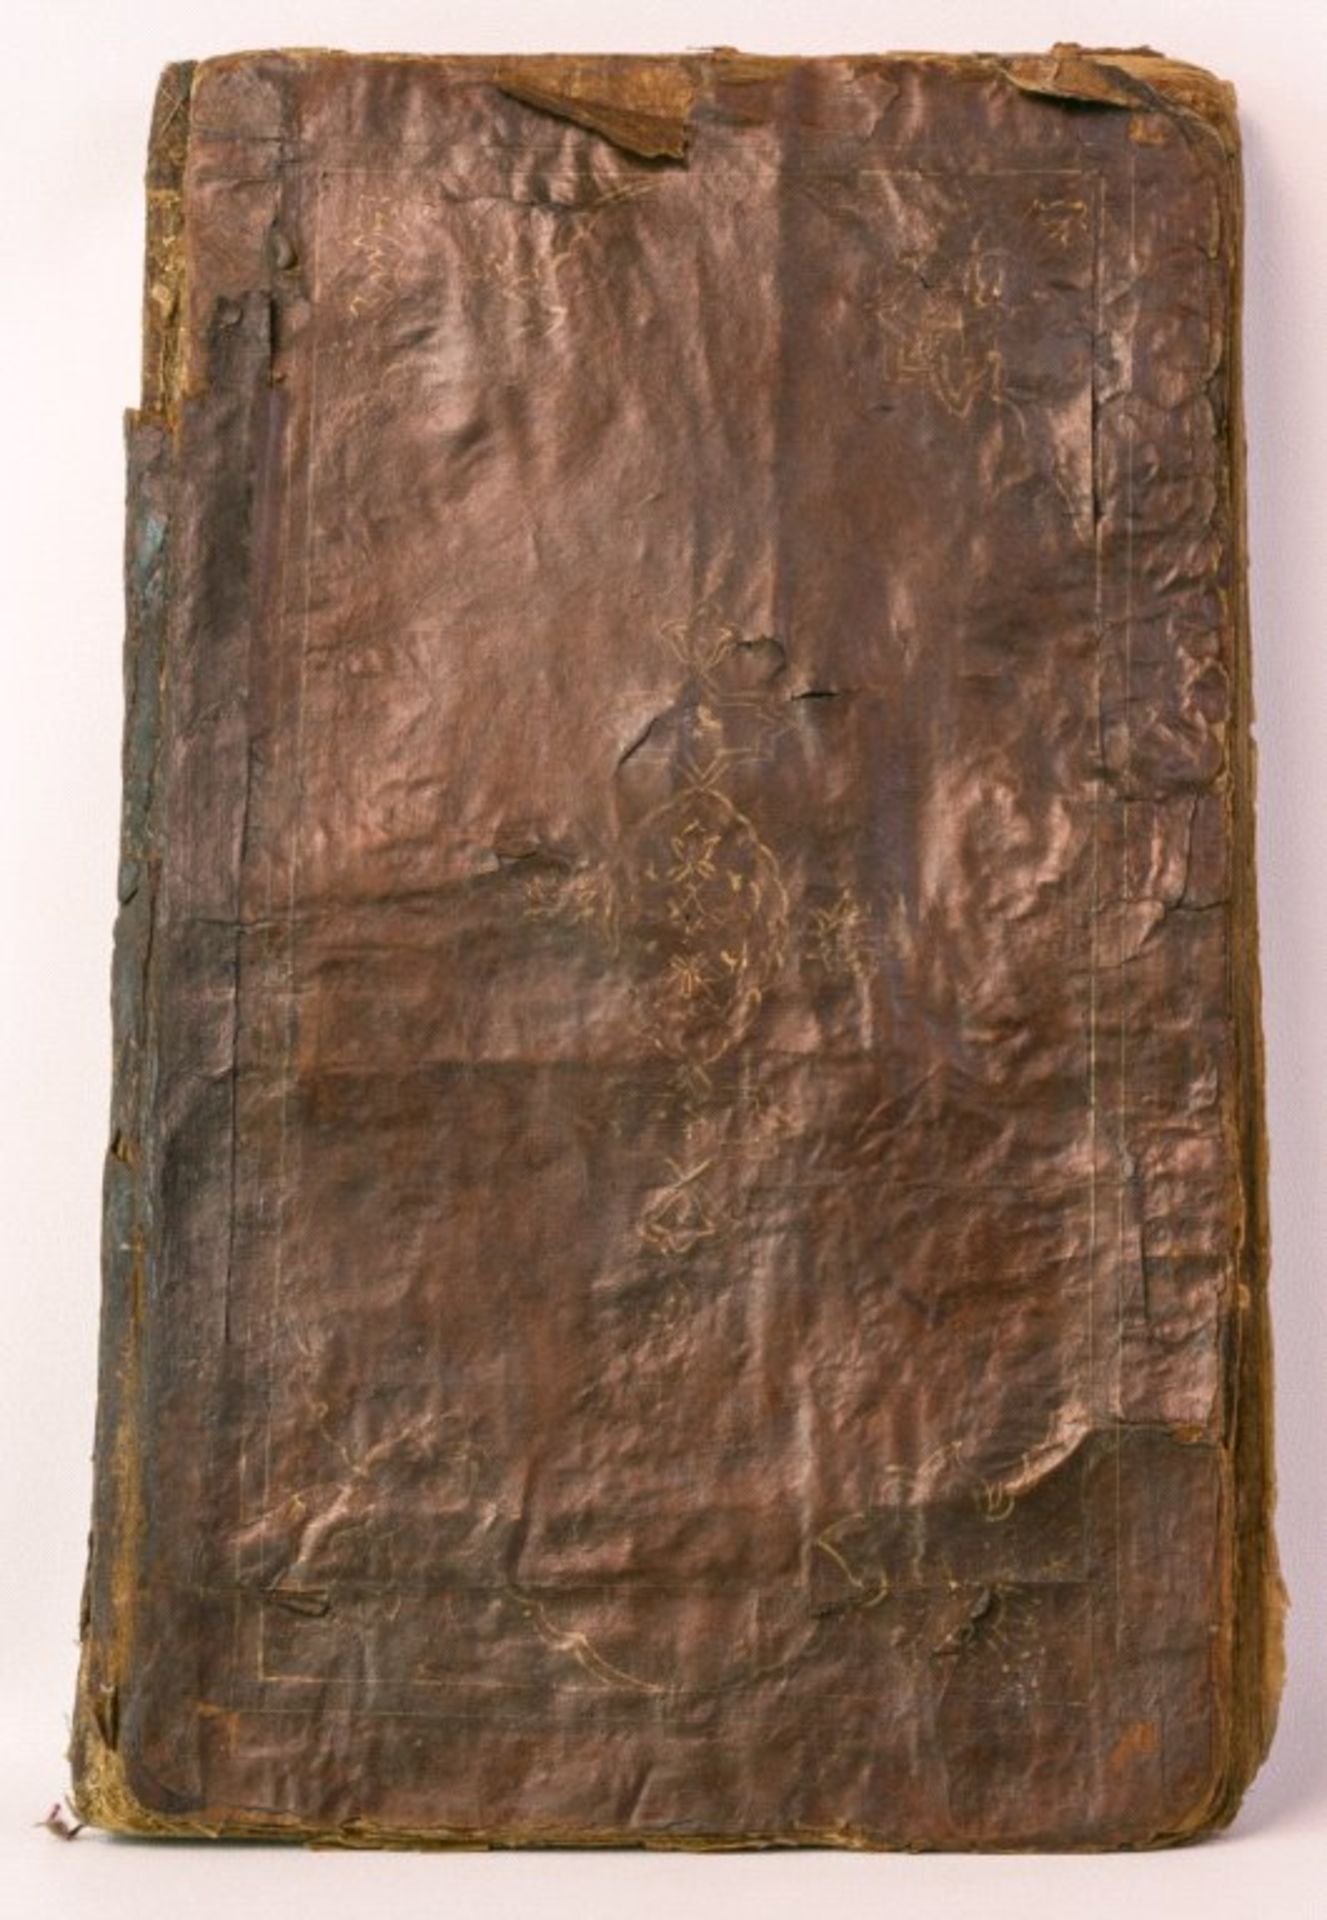 Persien Ende 19. Jh.Buch, auf der ersten Seite datiert, Ledereinband, das Buchwurde zur